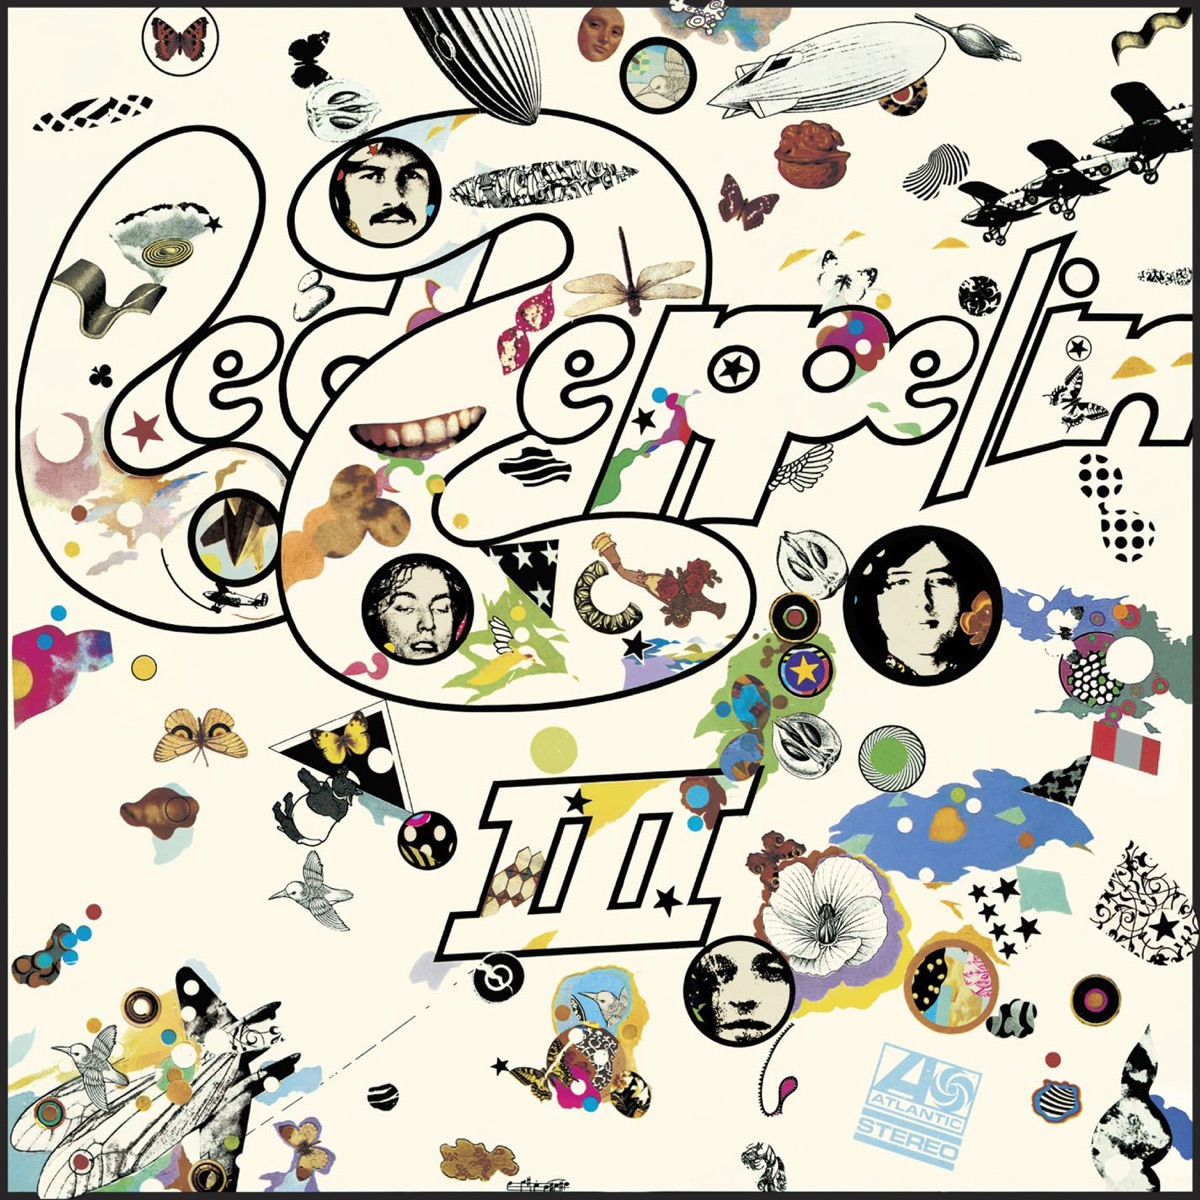 Led Zeppelin II (Remastered) - Album by Led Zeppelin - Apple Music